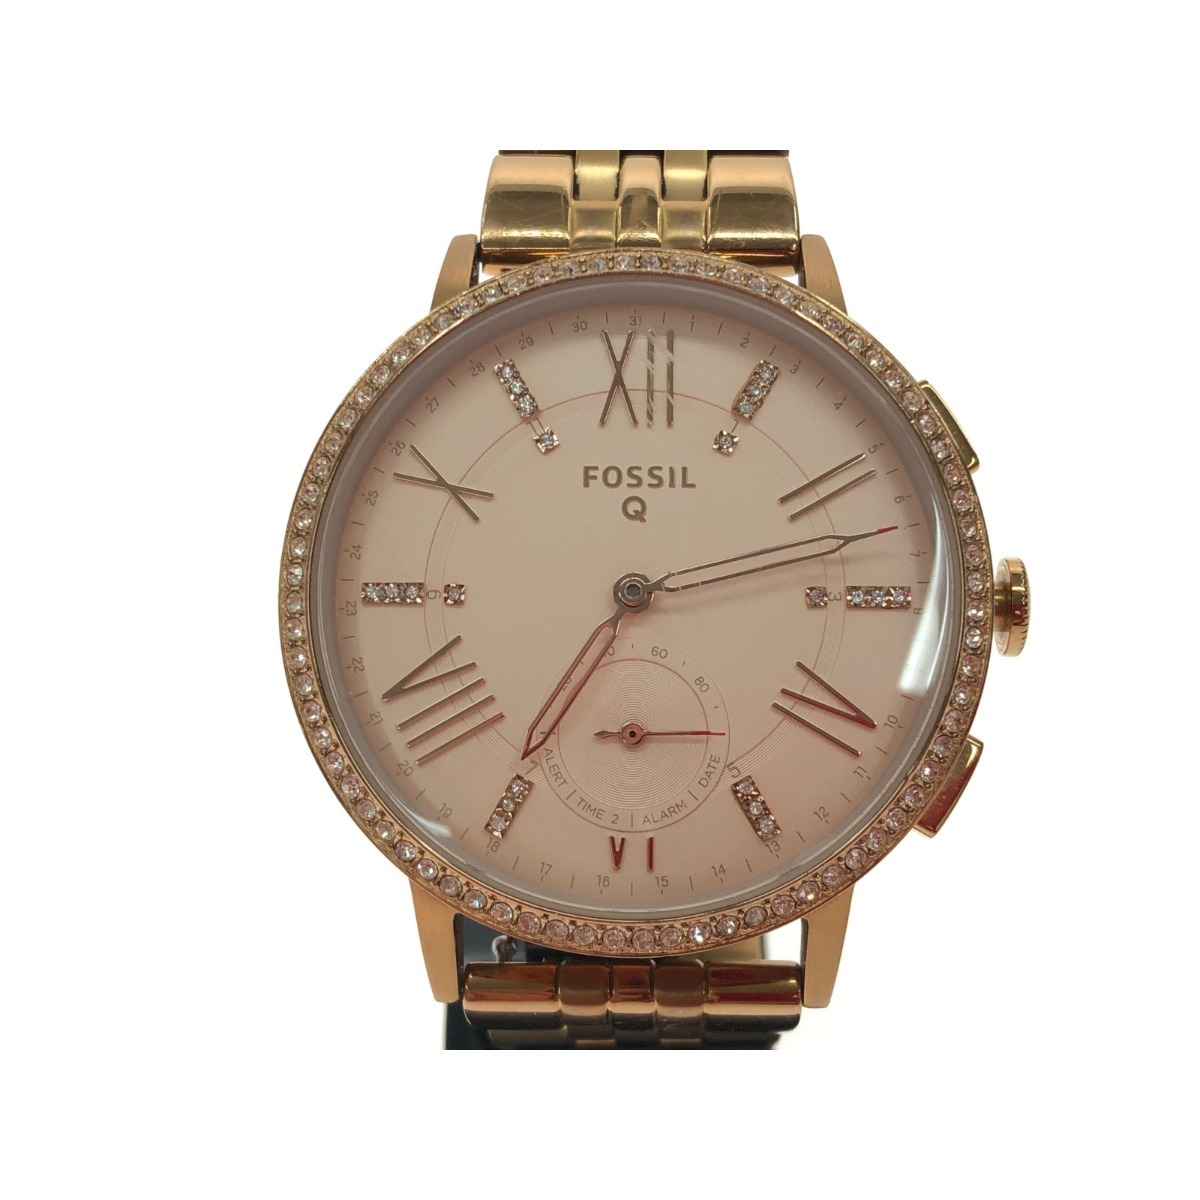 VV FOSSIL Fossil женский кварц смарт-часы большой лицо NDW2A розовое золото немного царапина . загрязнения есть 